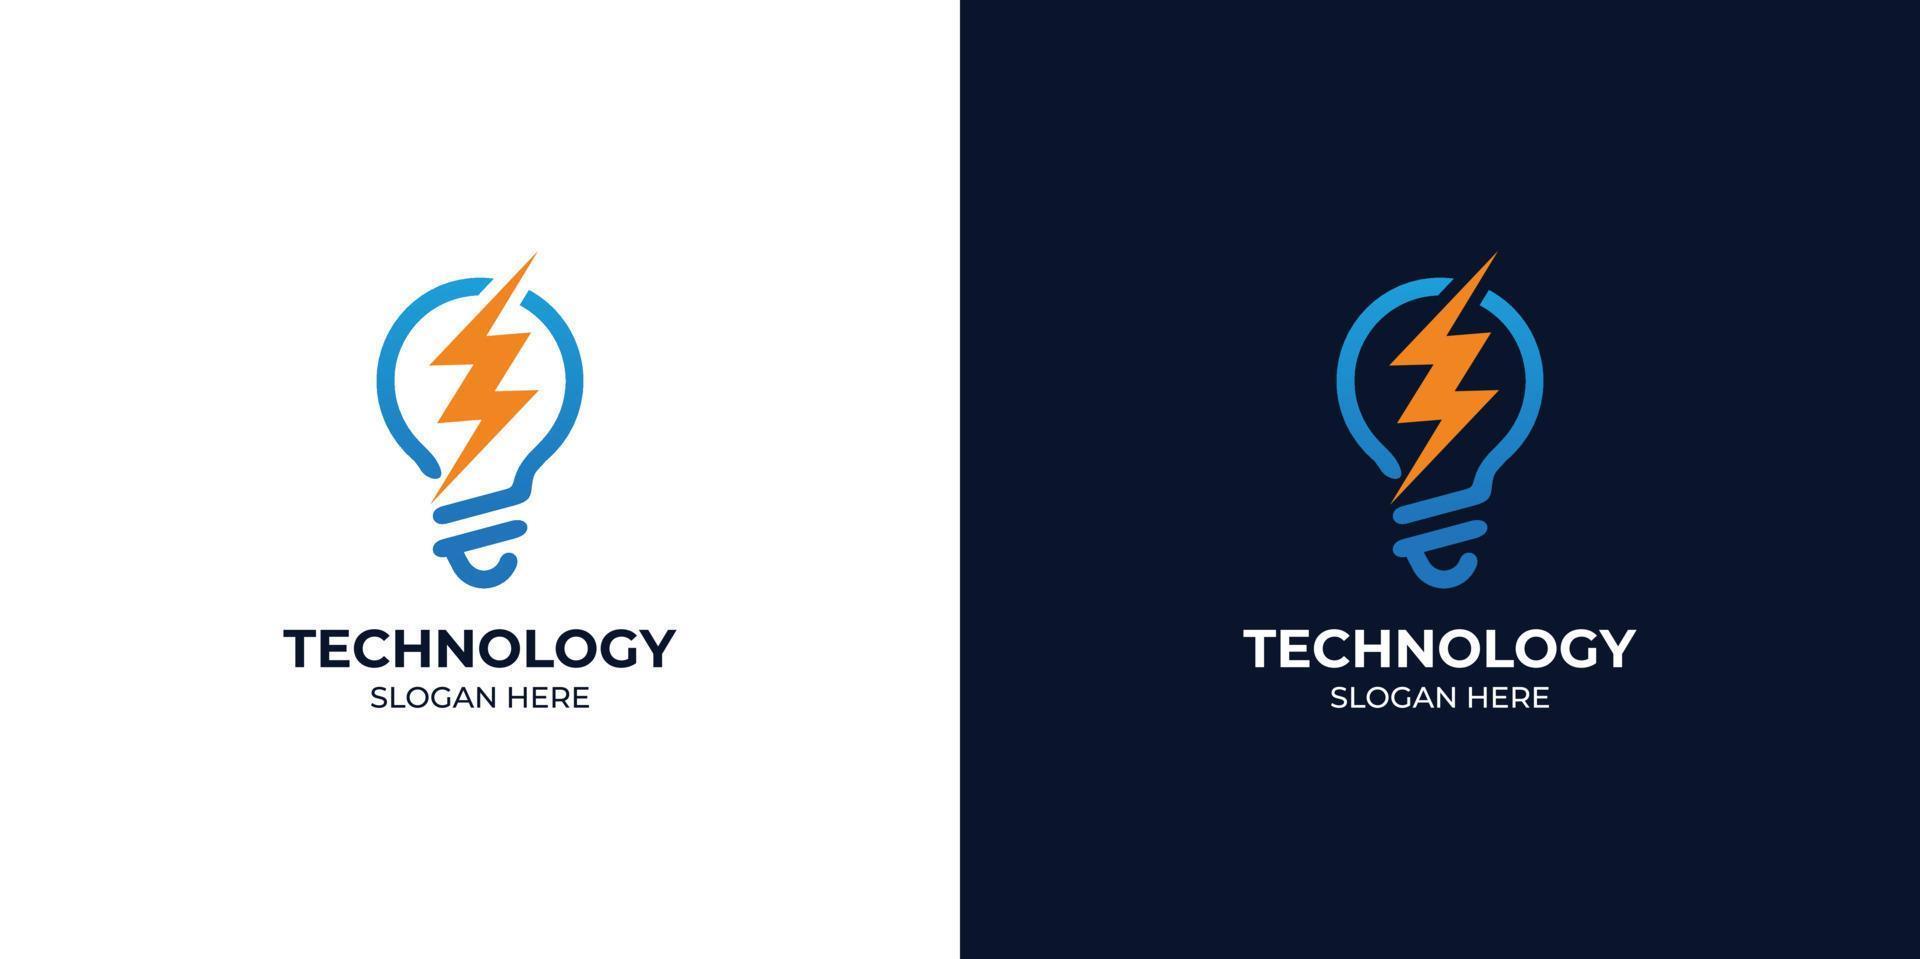 conjunto de logotipos de tecnología combinada con energía moderna y elegante vector